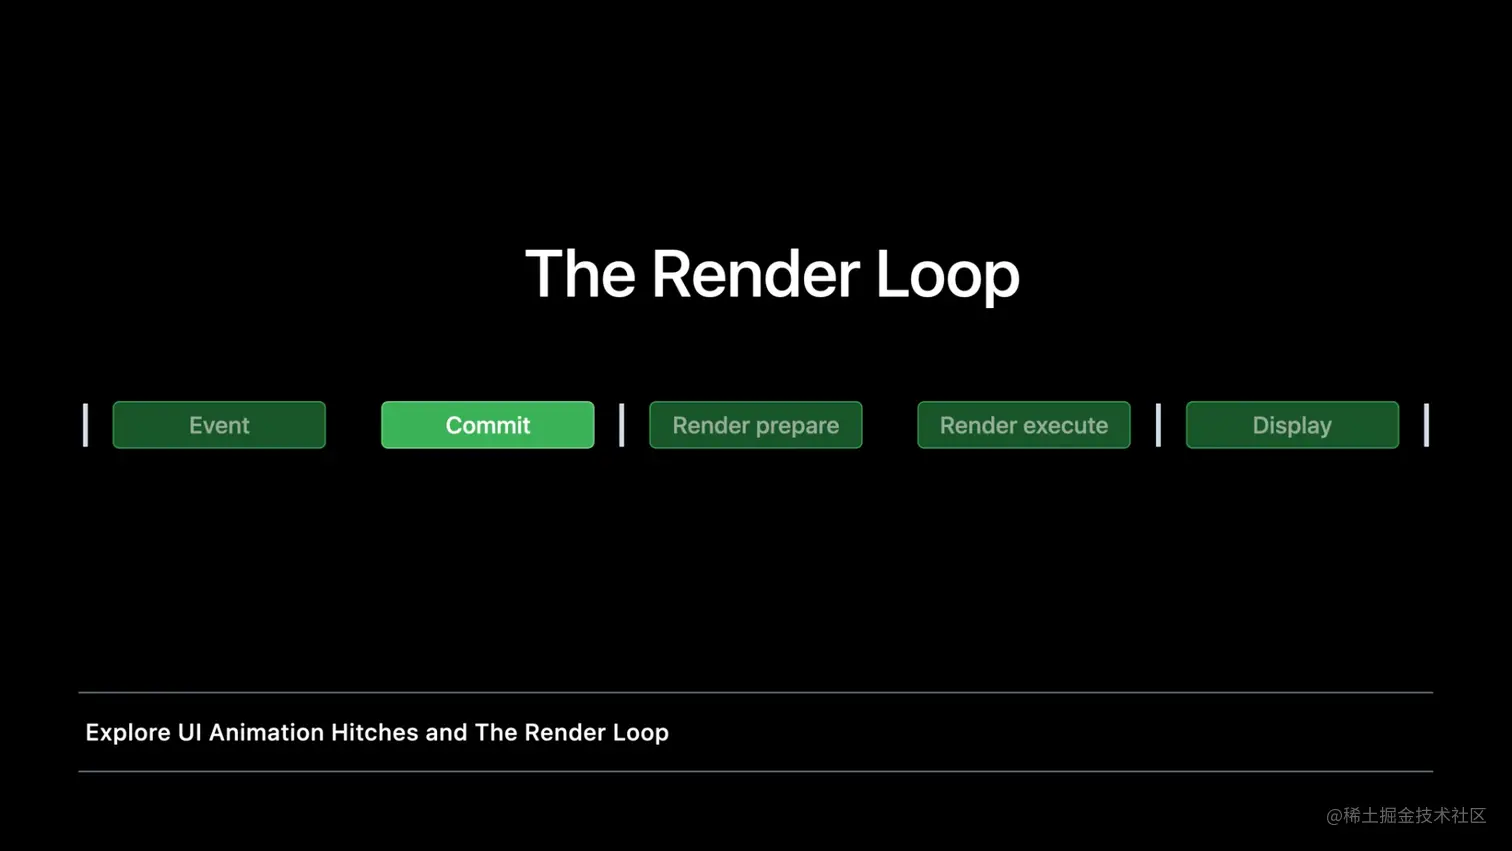 The Render Loop